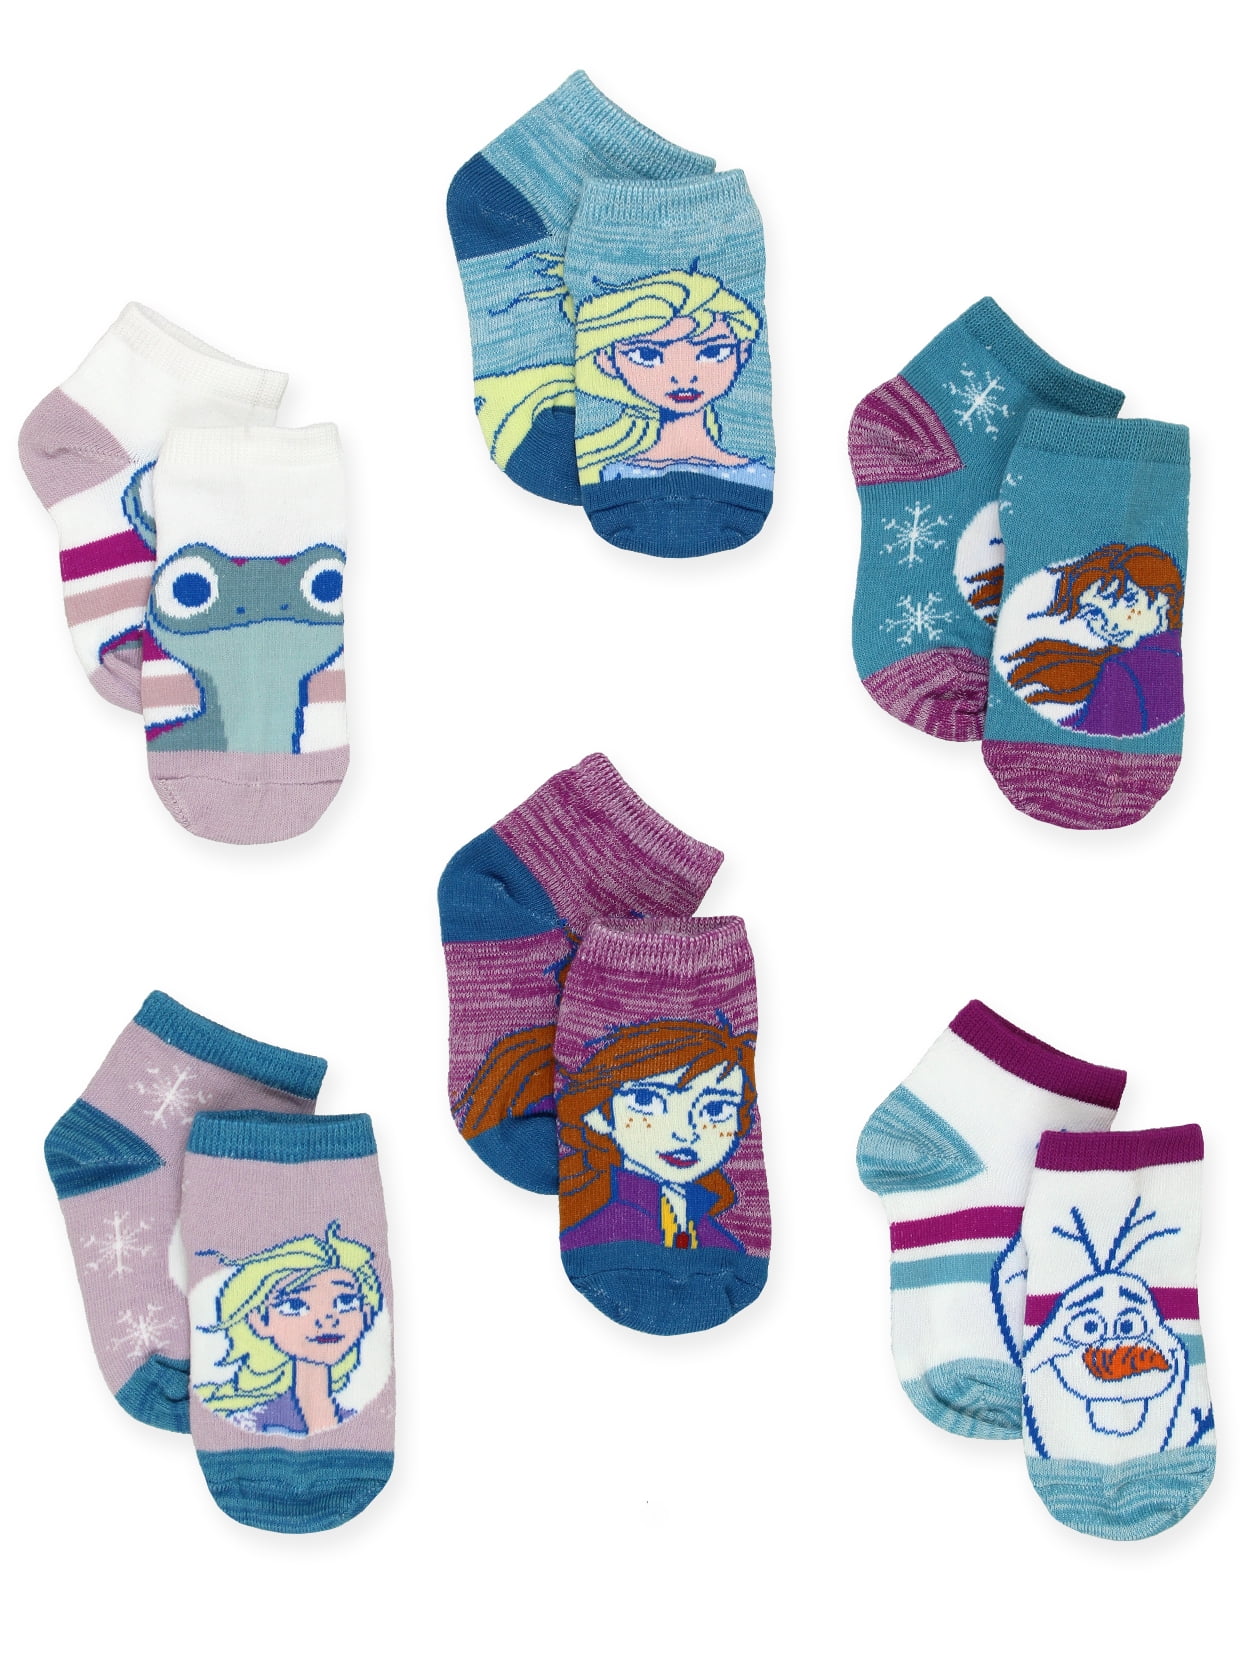 Frozen Girls Socks 6 Pairs